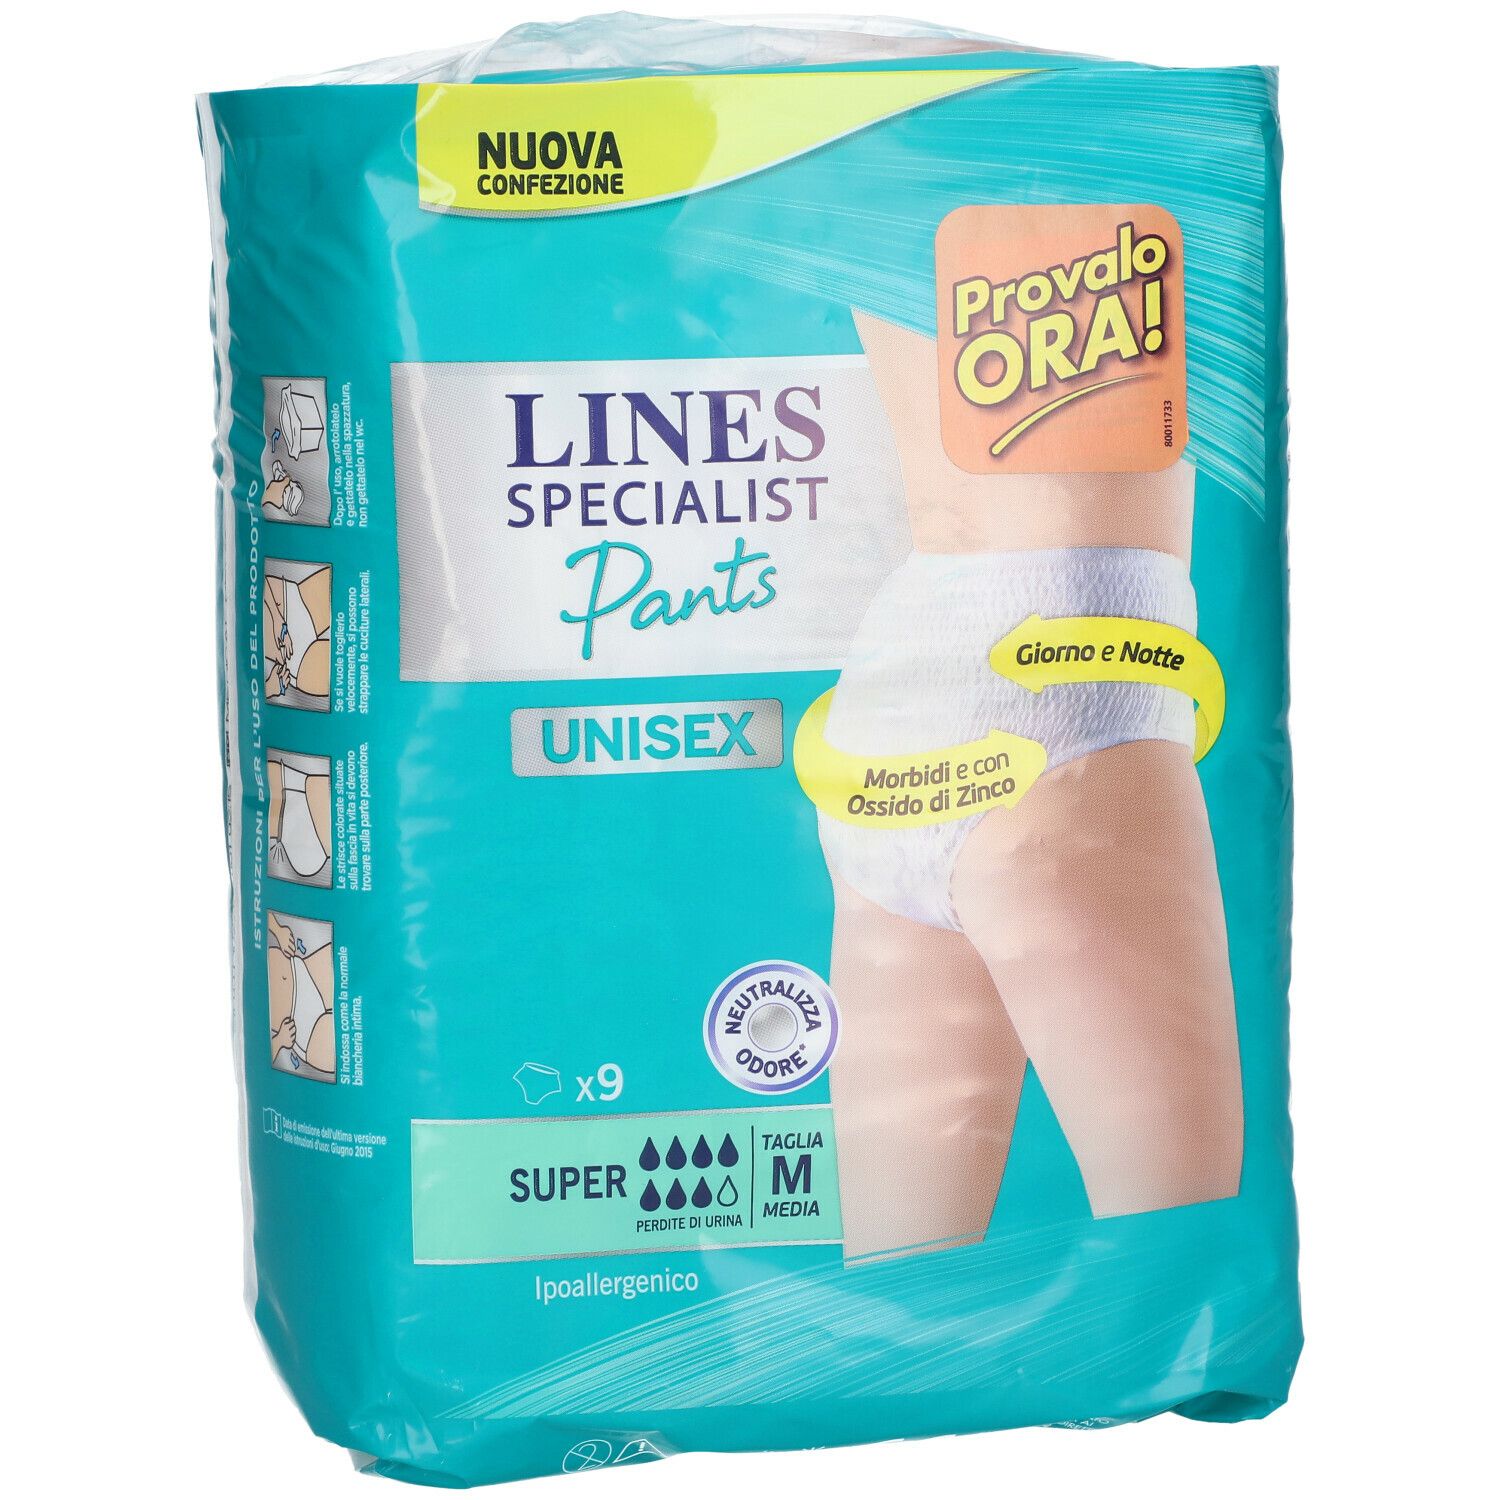 Lines Specialist Pants Unisex Super M